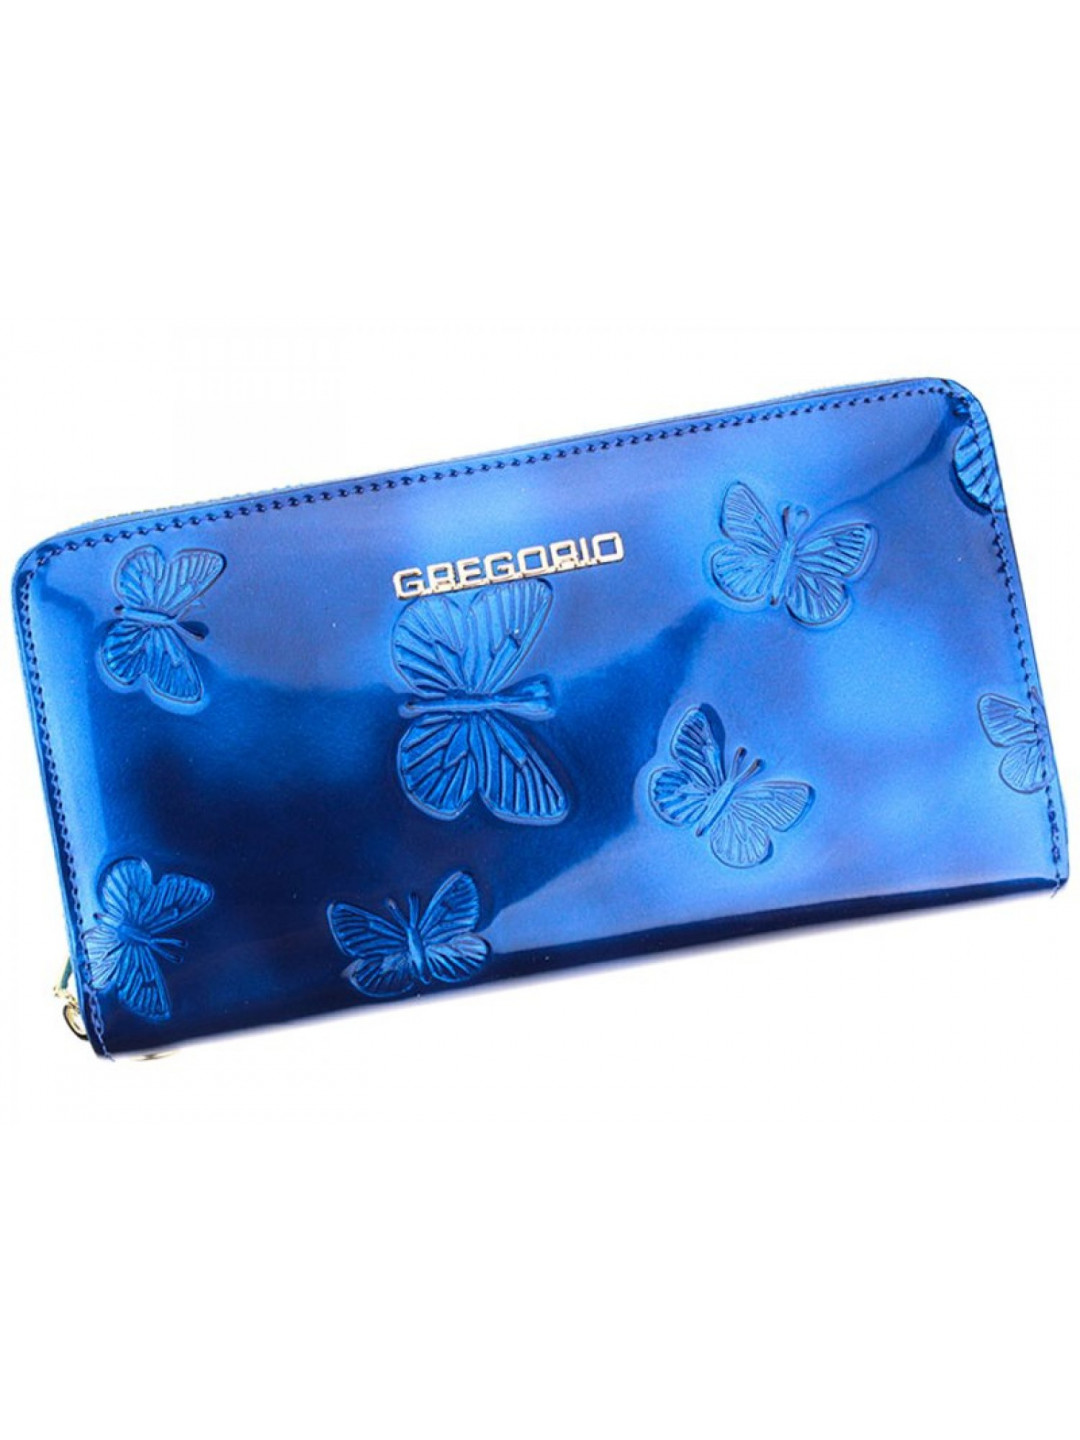 Dámská luxusní kožená lakovaná peněženka Gregorio Santall modrá